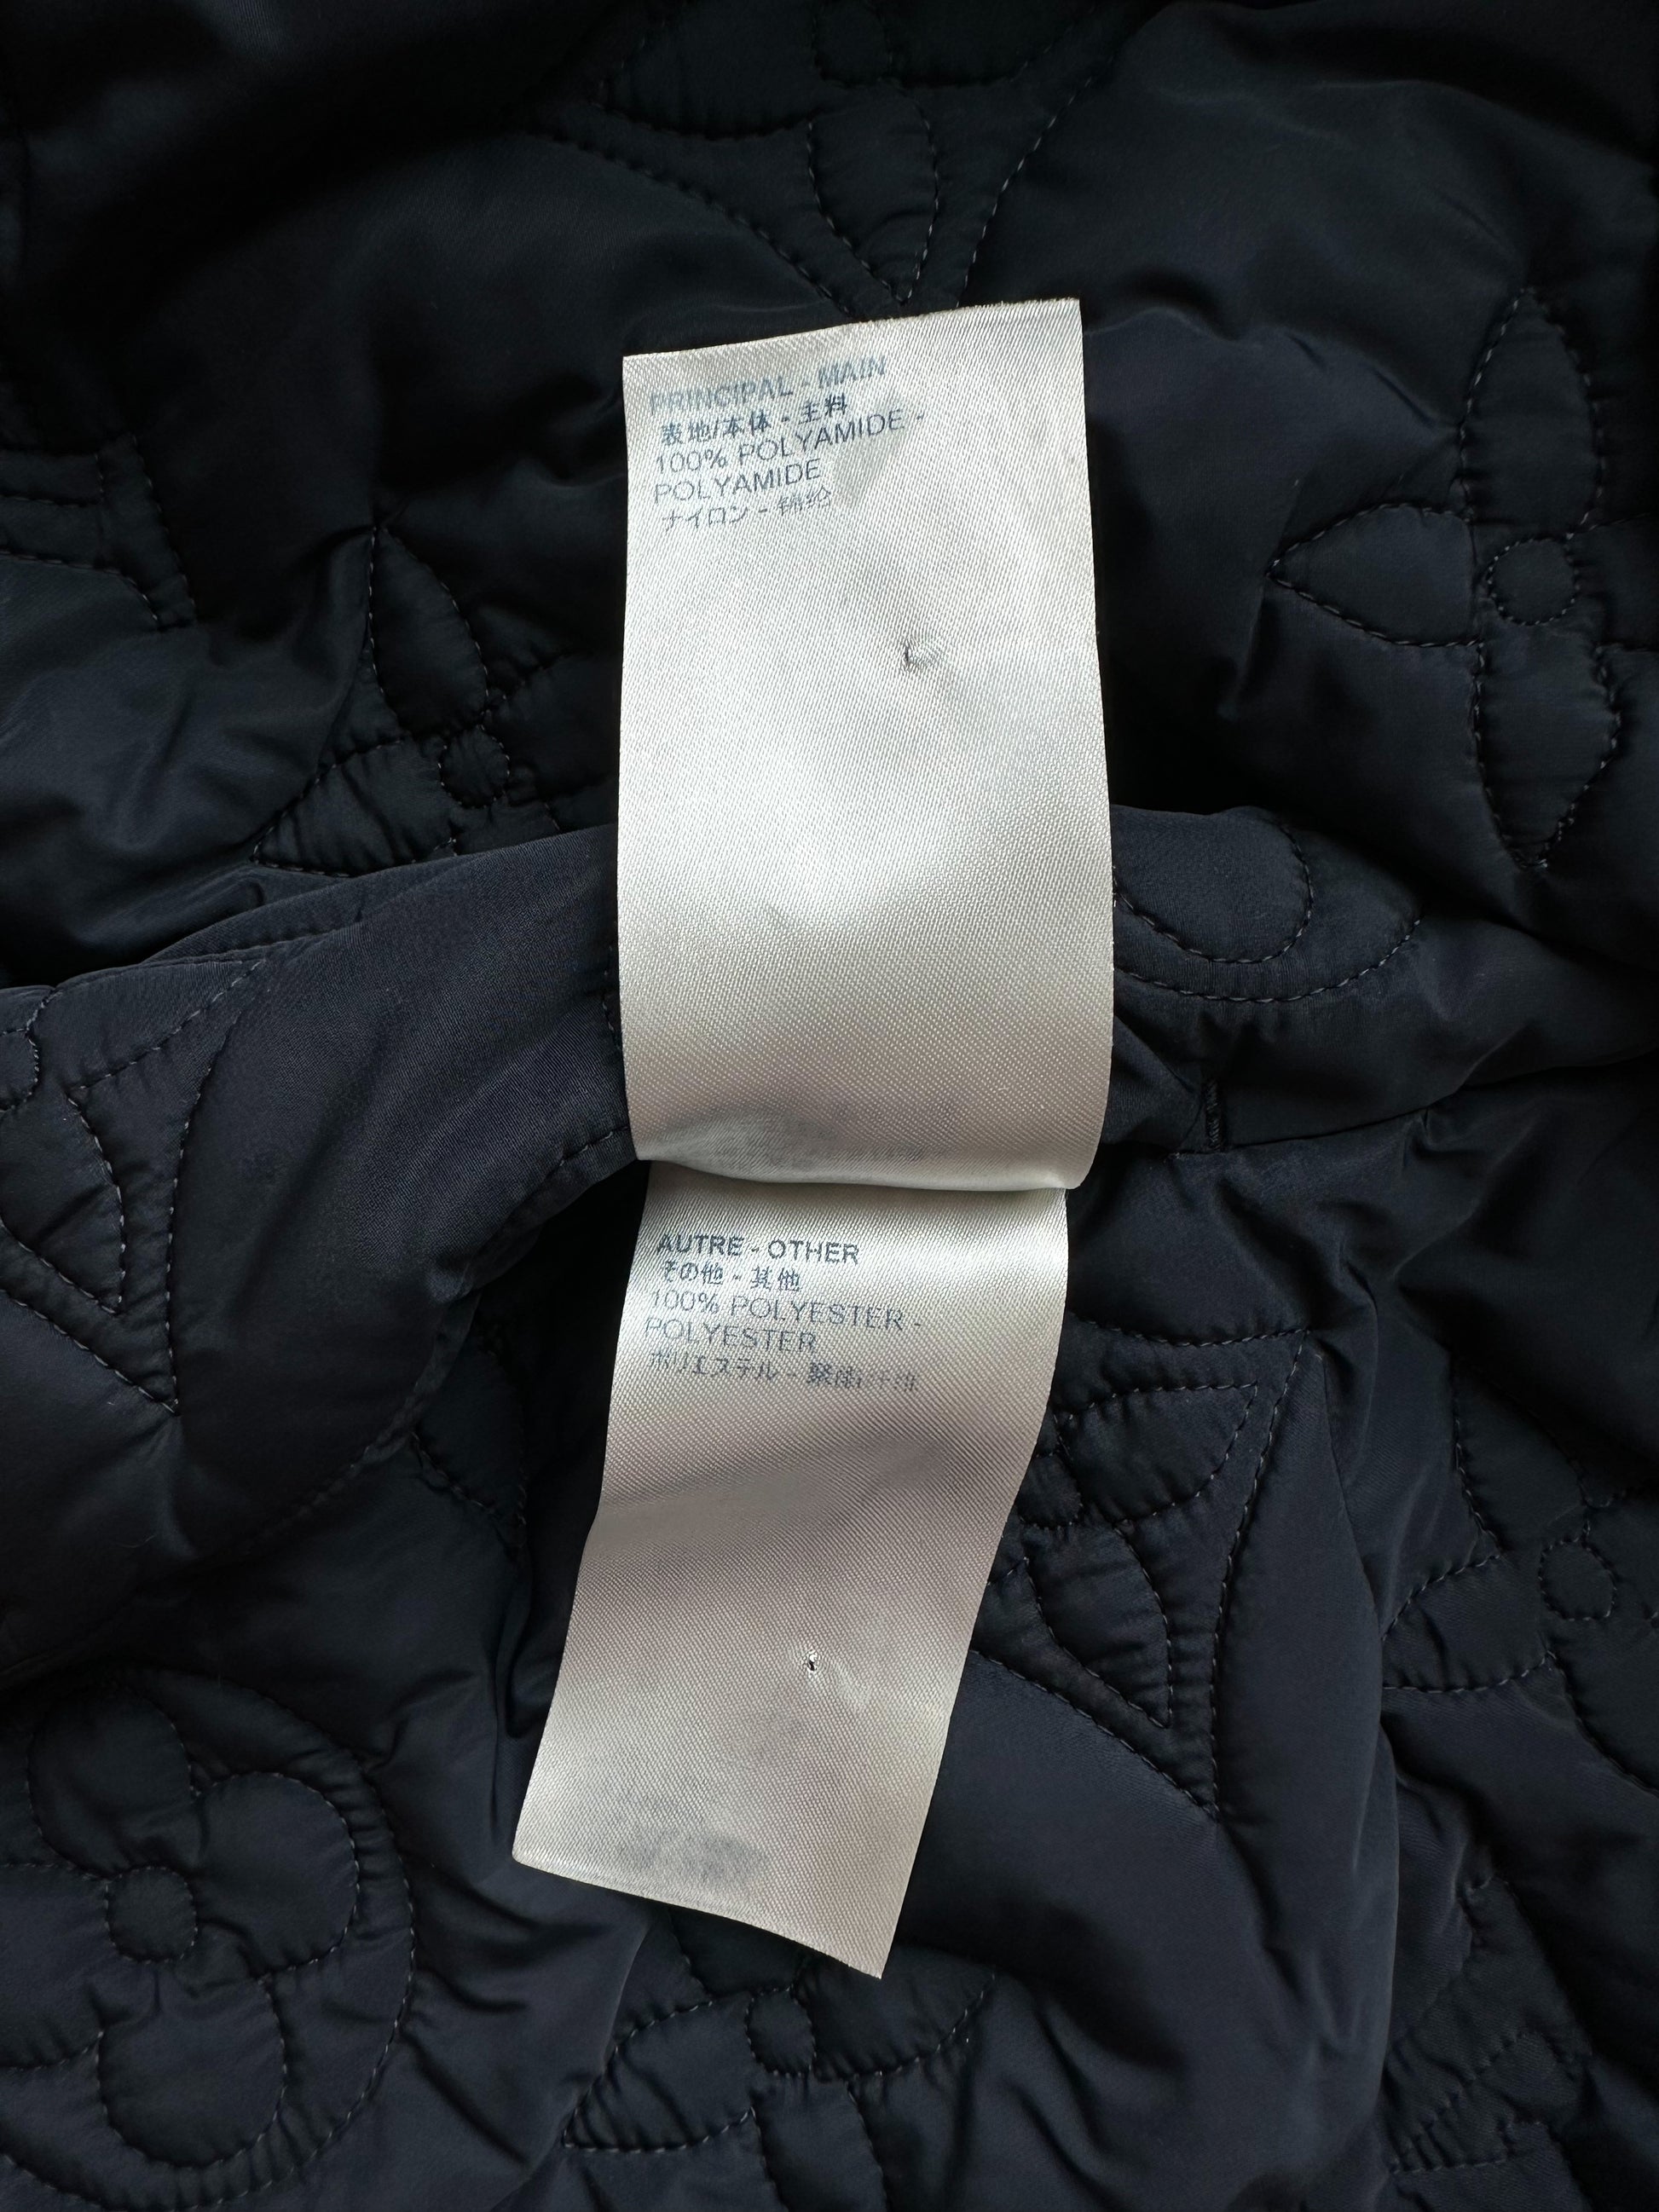 Louis Vuitton Padded Monogram Jacket